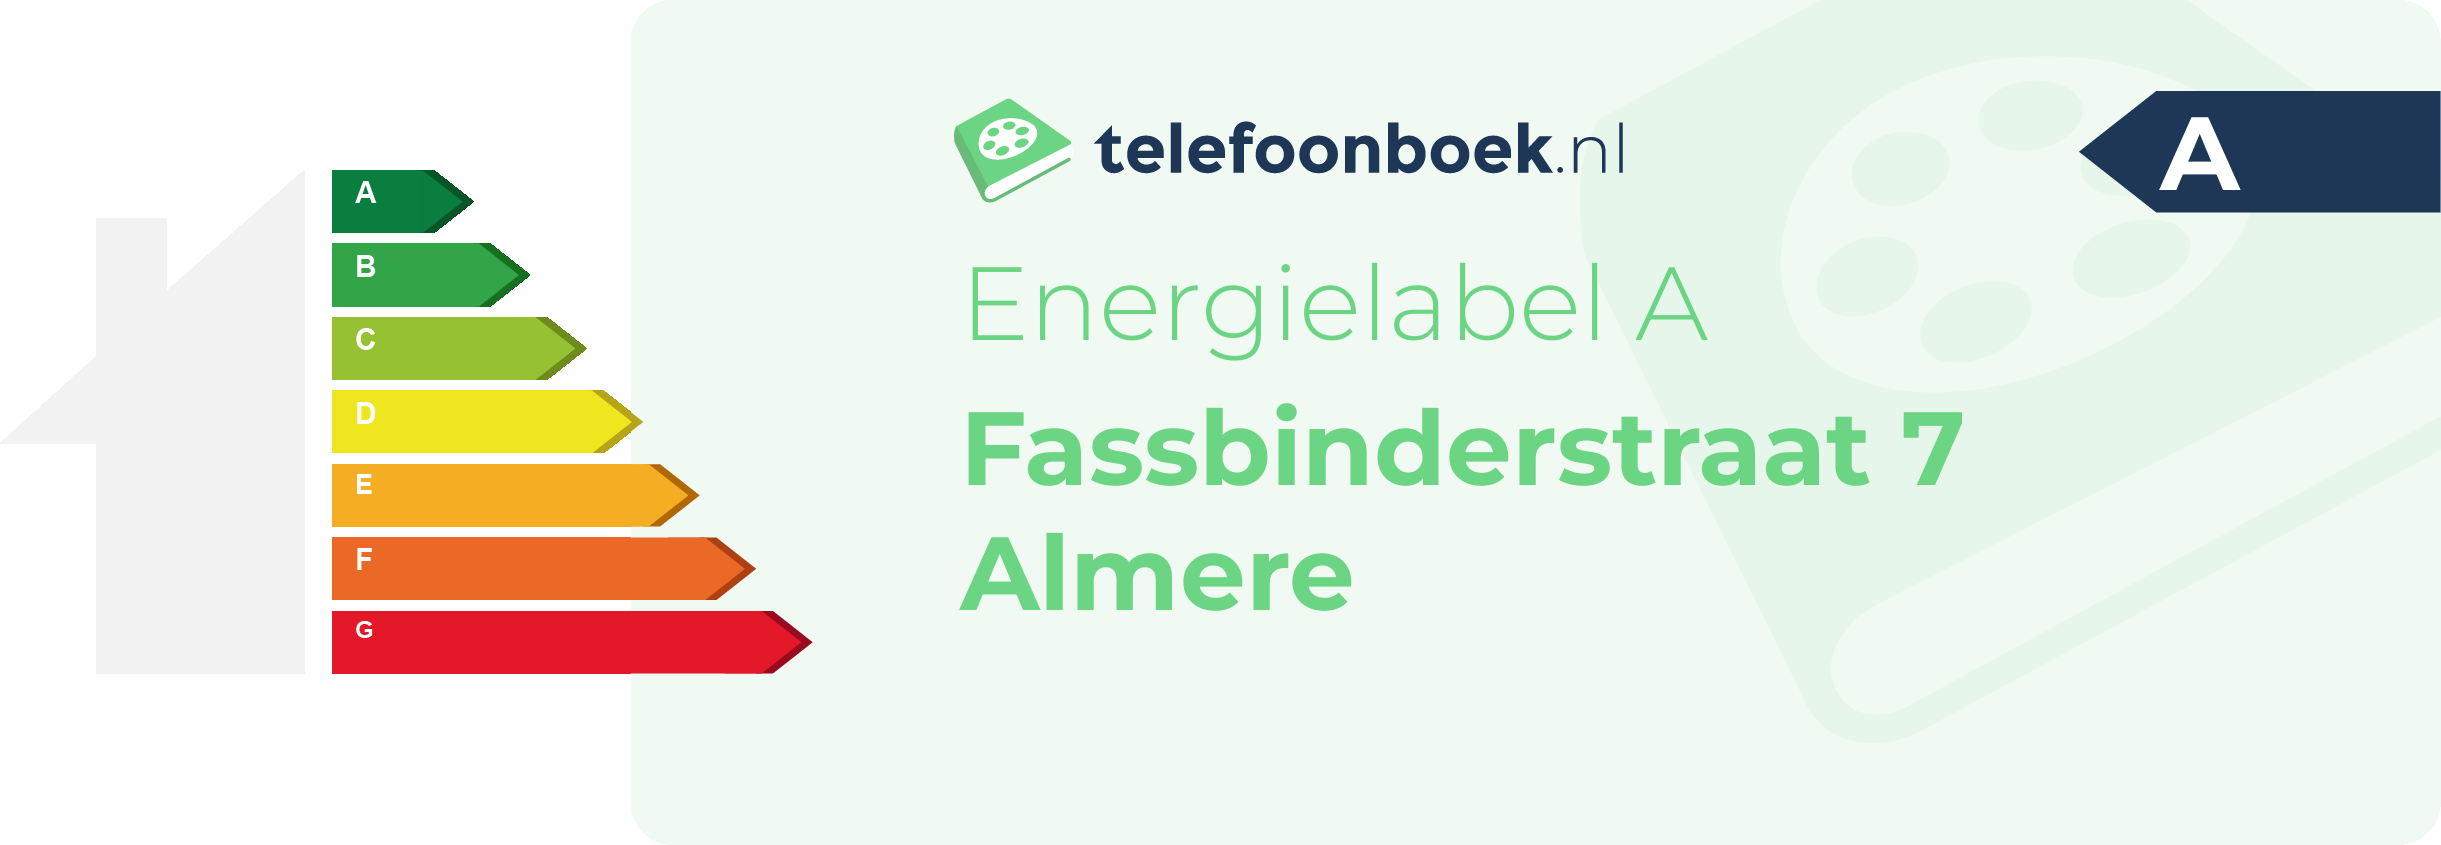 Energielabel Fassbinderstraat 7 Almere